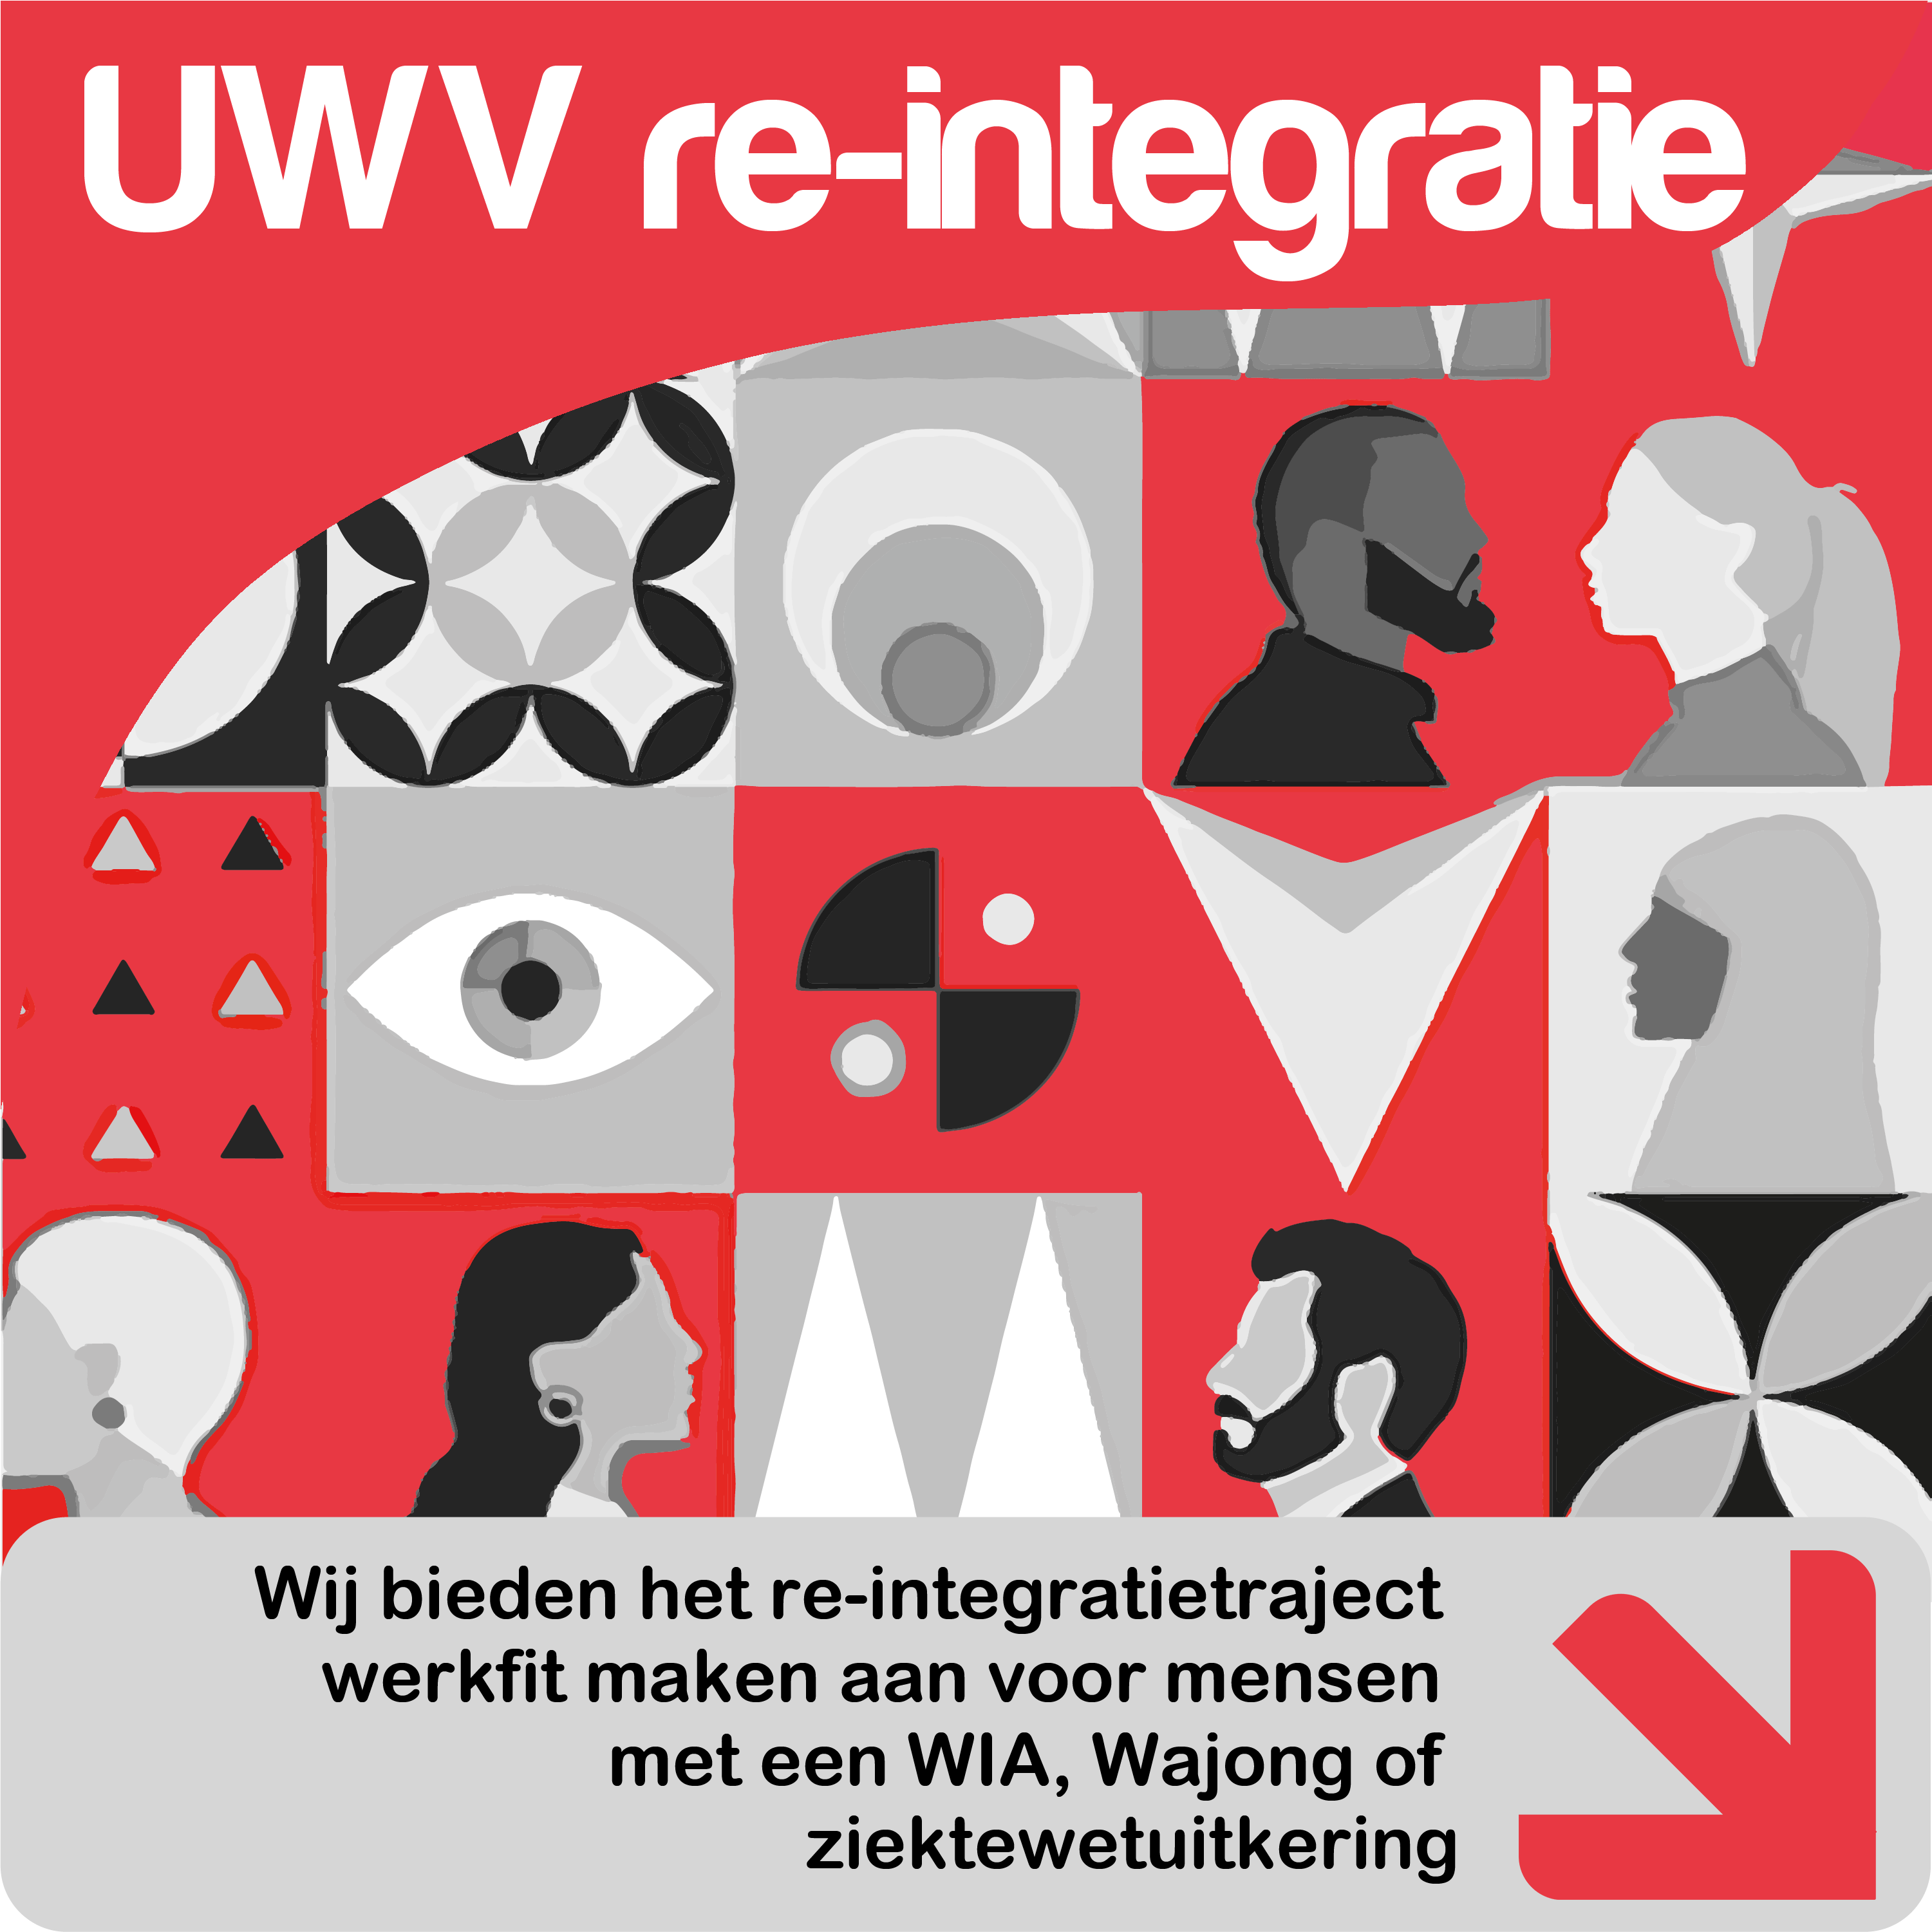 Re-integratie met UWV: Stap voor stap naar werk